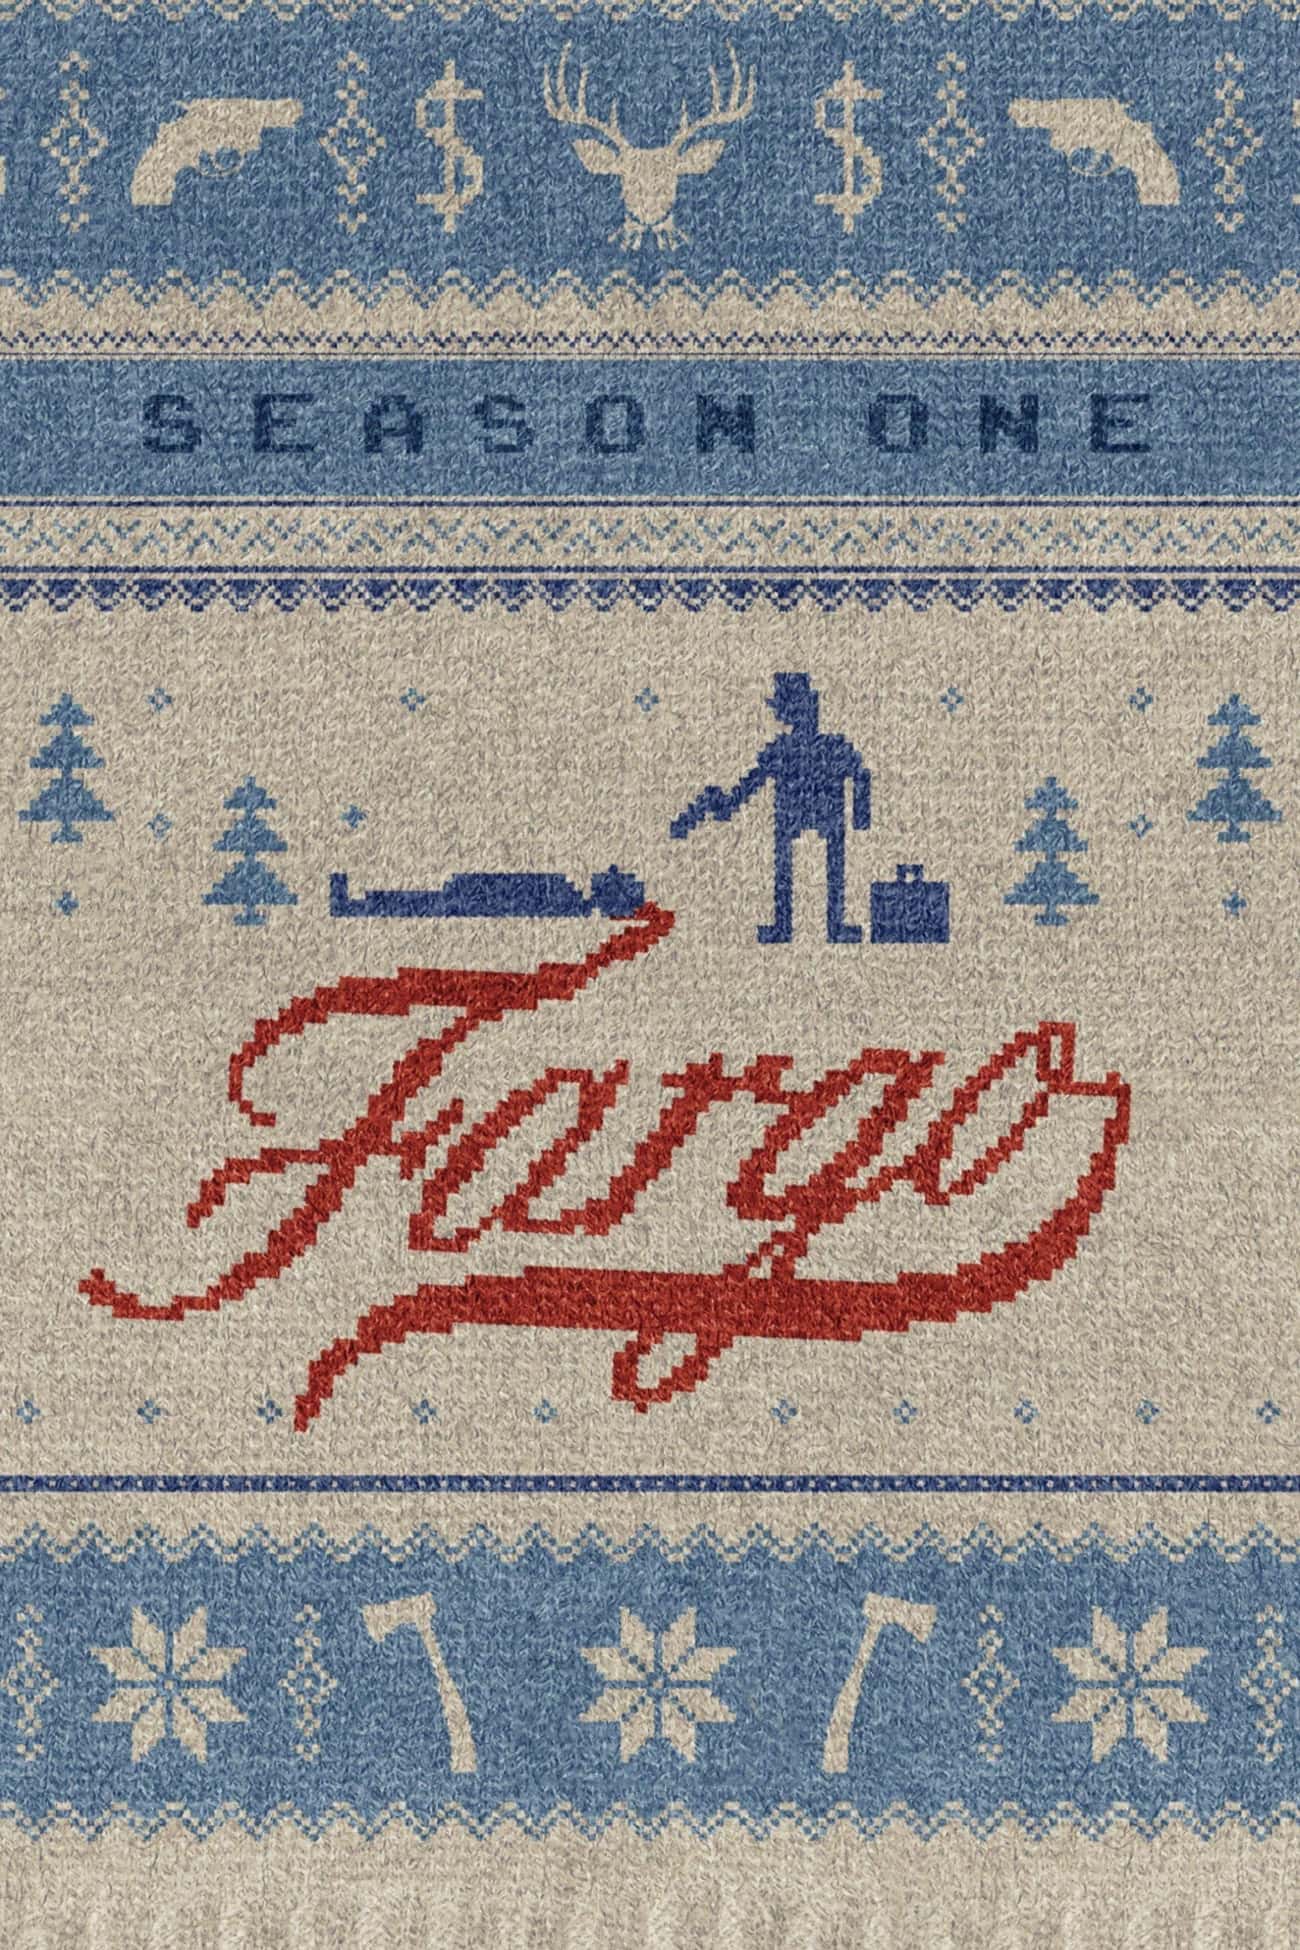 Fargo - Season 1